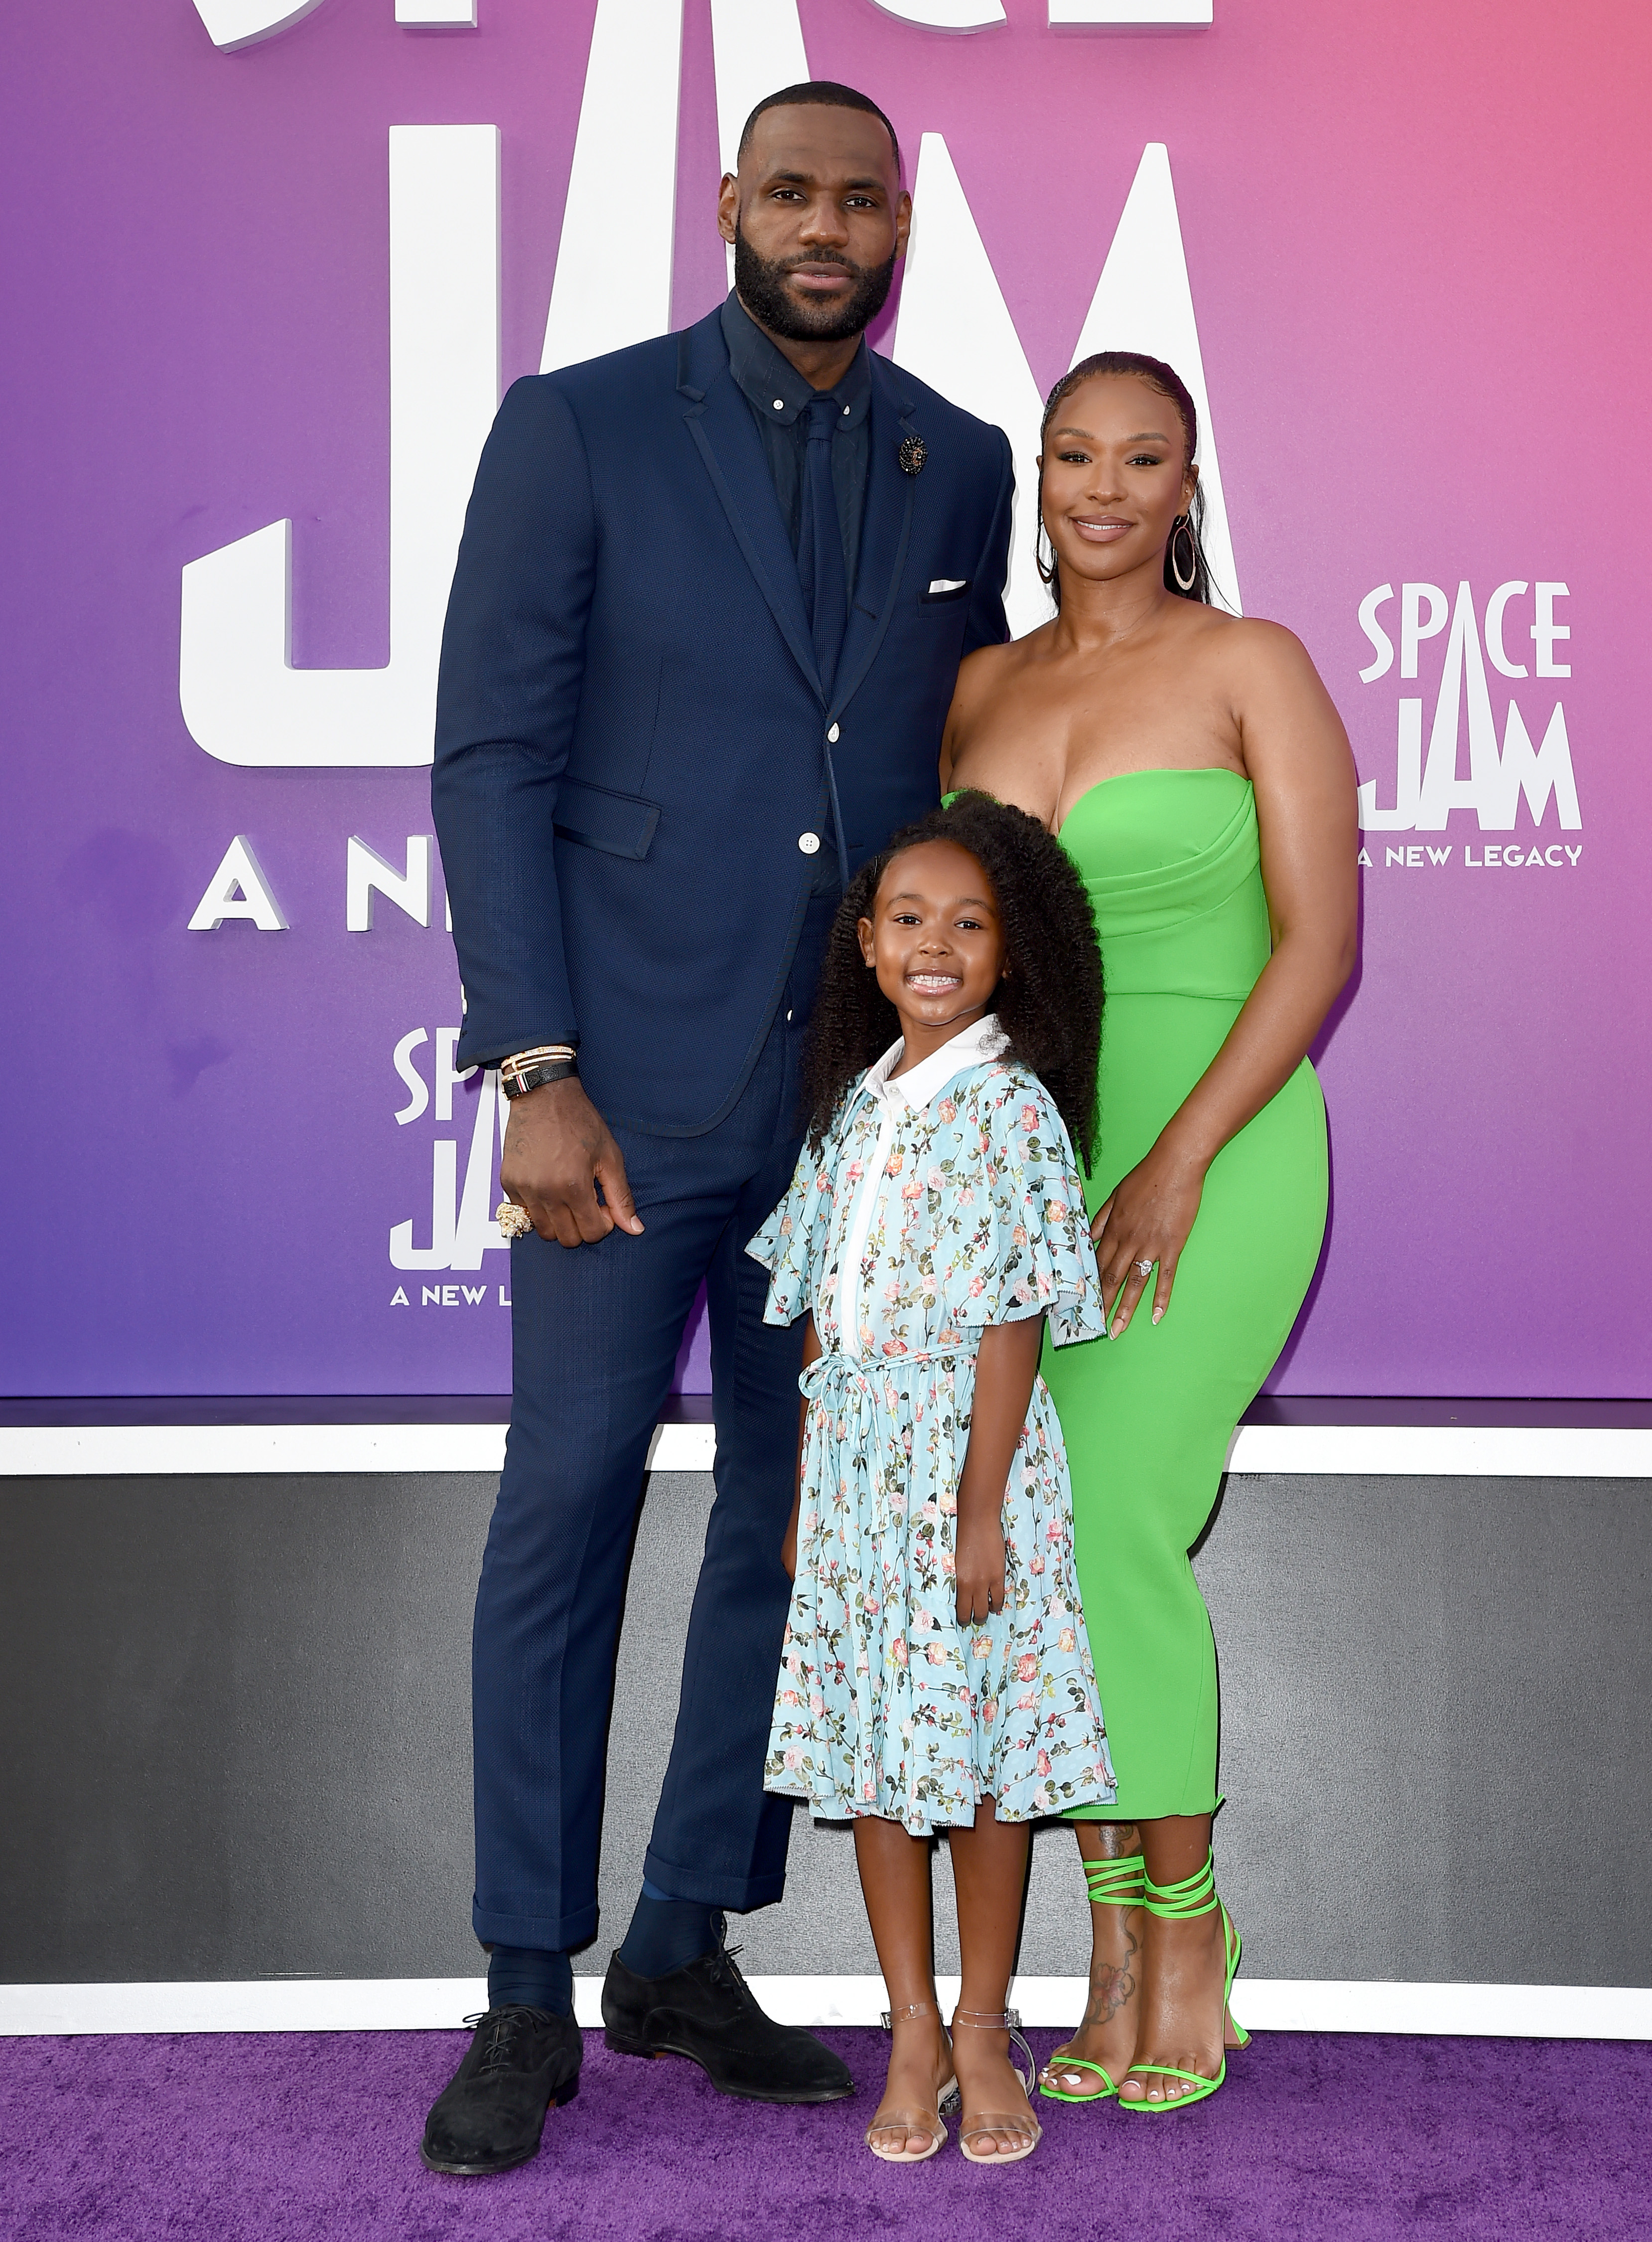 LeBron James, sa femme Savannah et sa fille Zhuri James assistent à la première du film "Space Jam" de Warner Bros : Un nouvel héritage" au Regal LA Live le 12 juillet 2021 à Los Angeles, Californie | Source : Getty Images